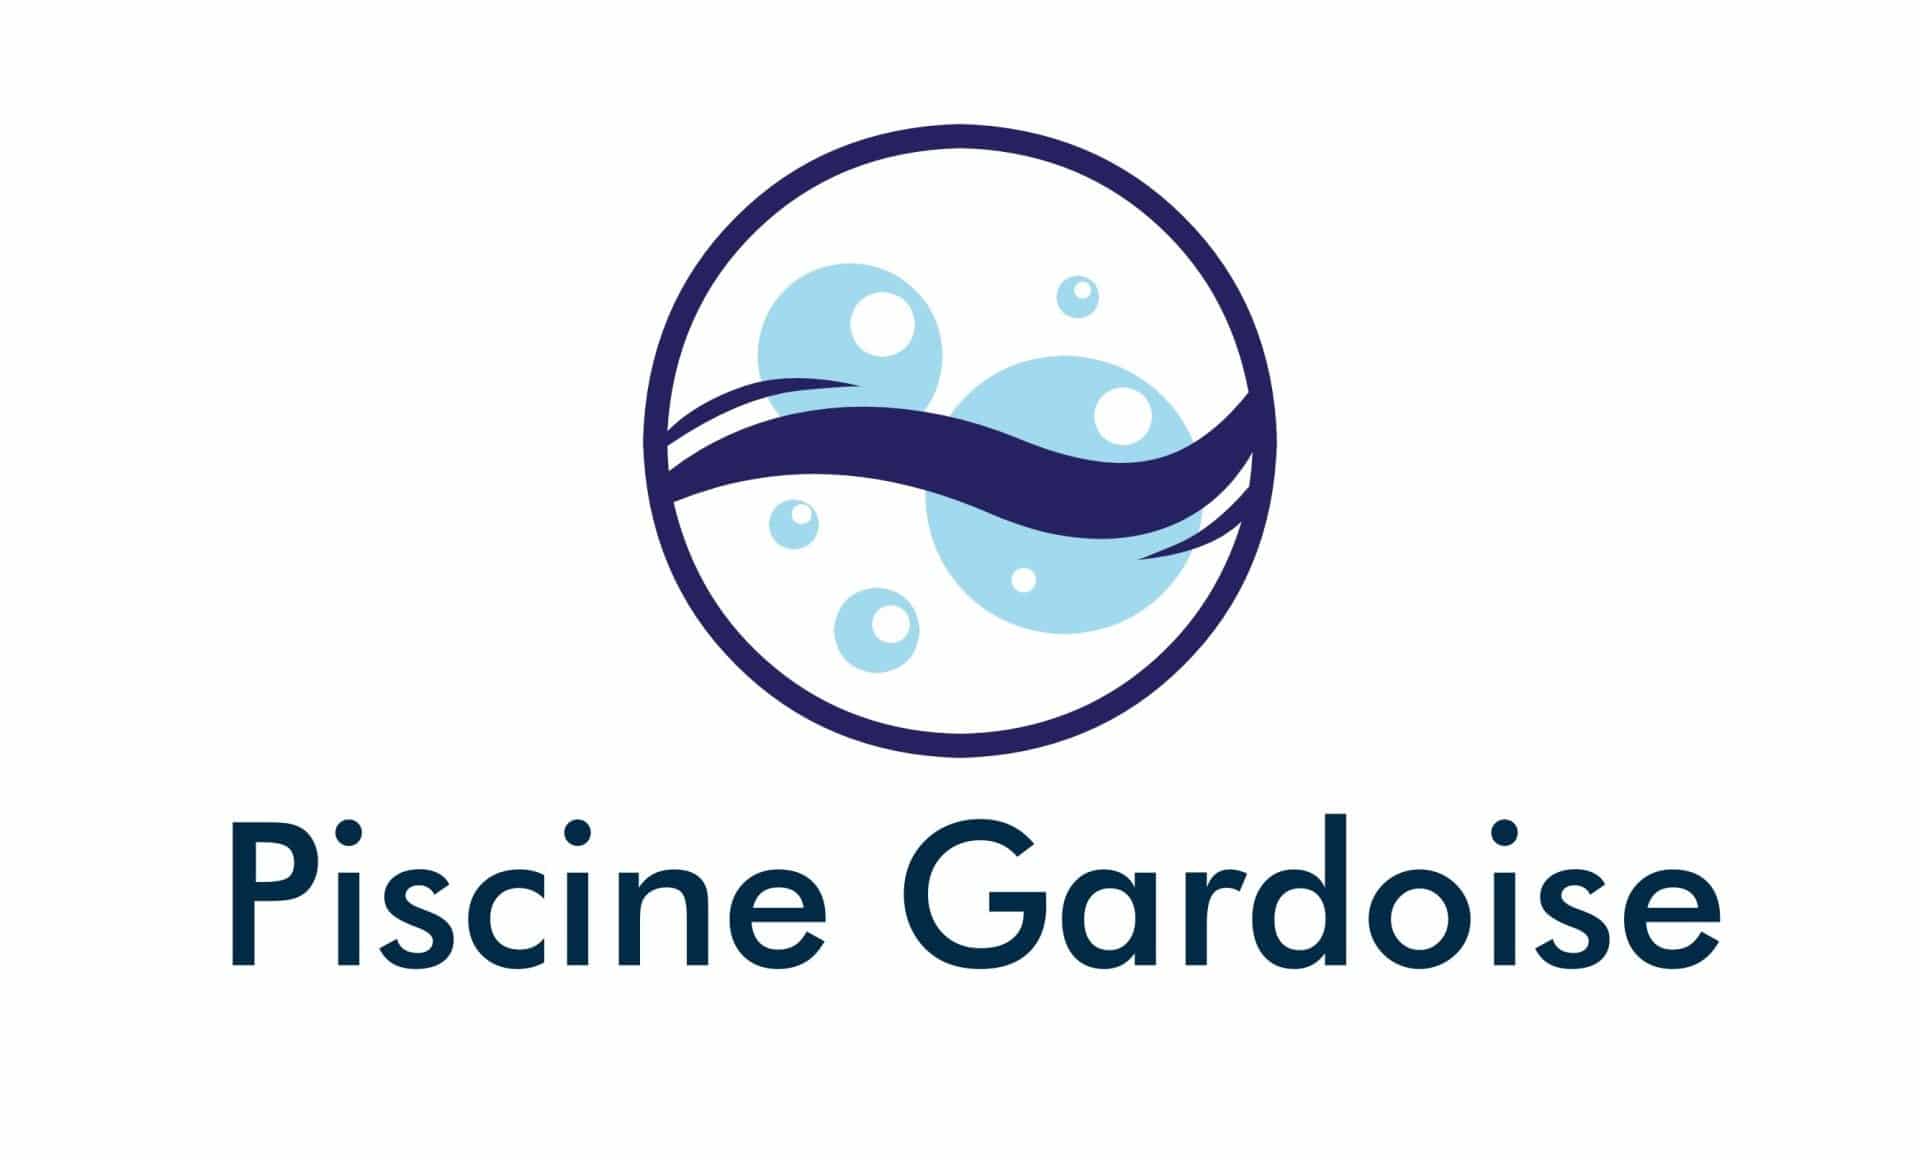 Piscine Gardoise - Rénovation piscine près d'Alès